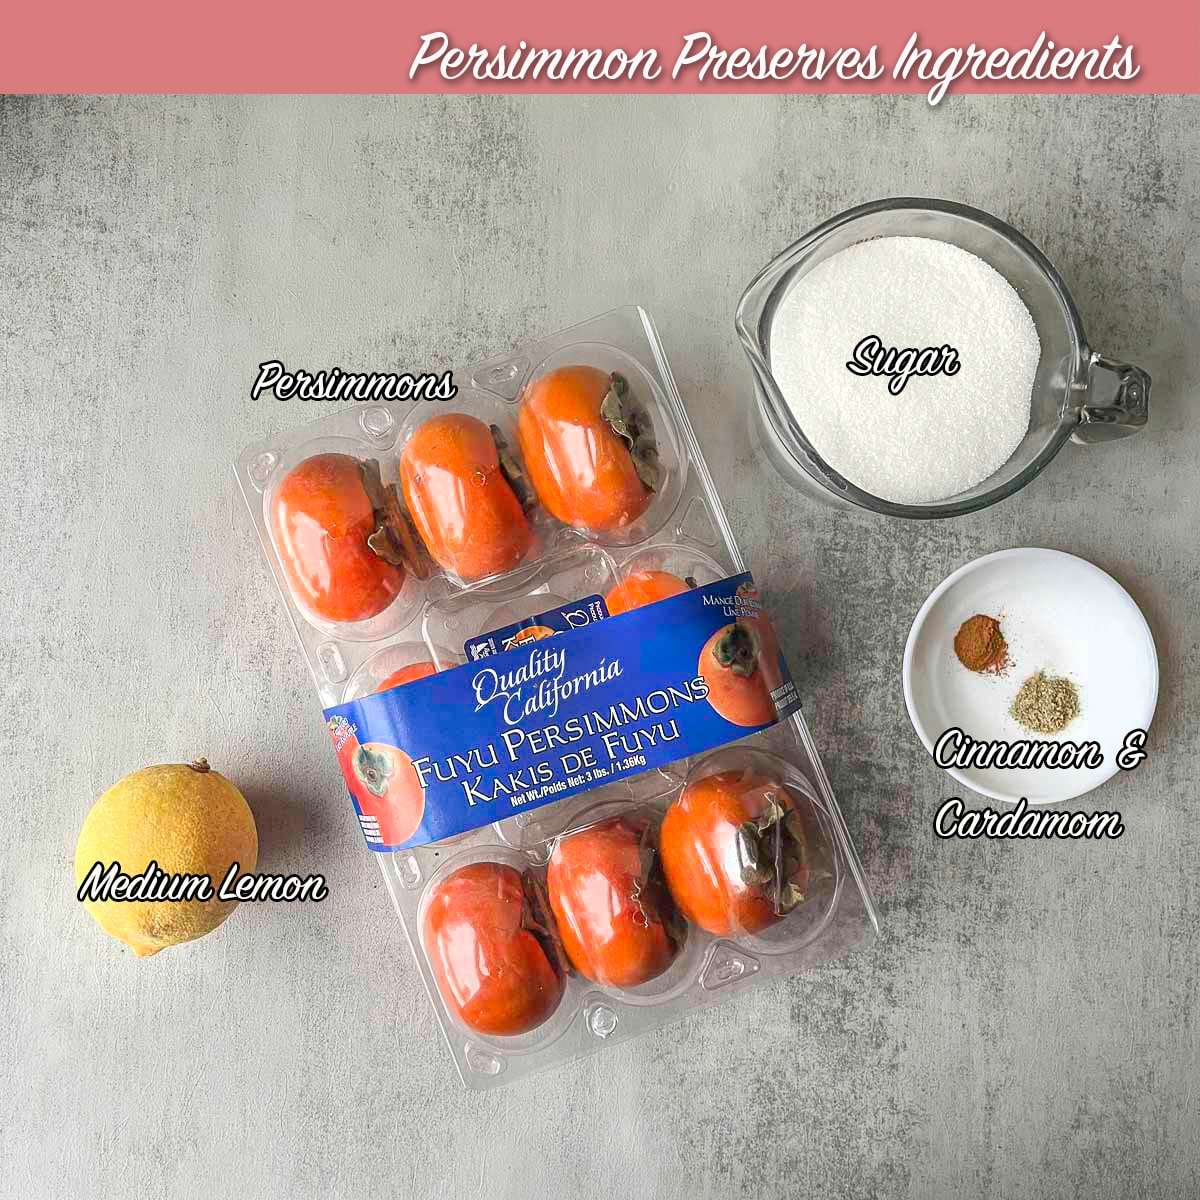 fuyu persimmon preserves ingredients